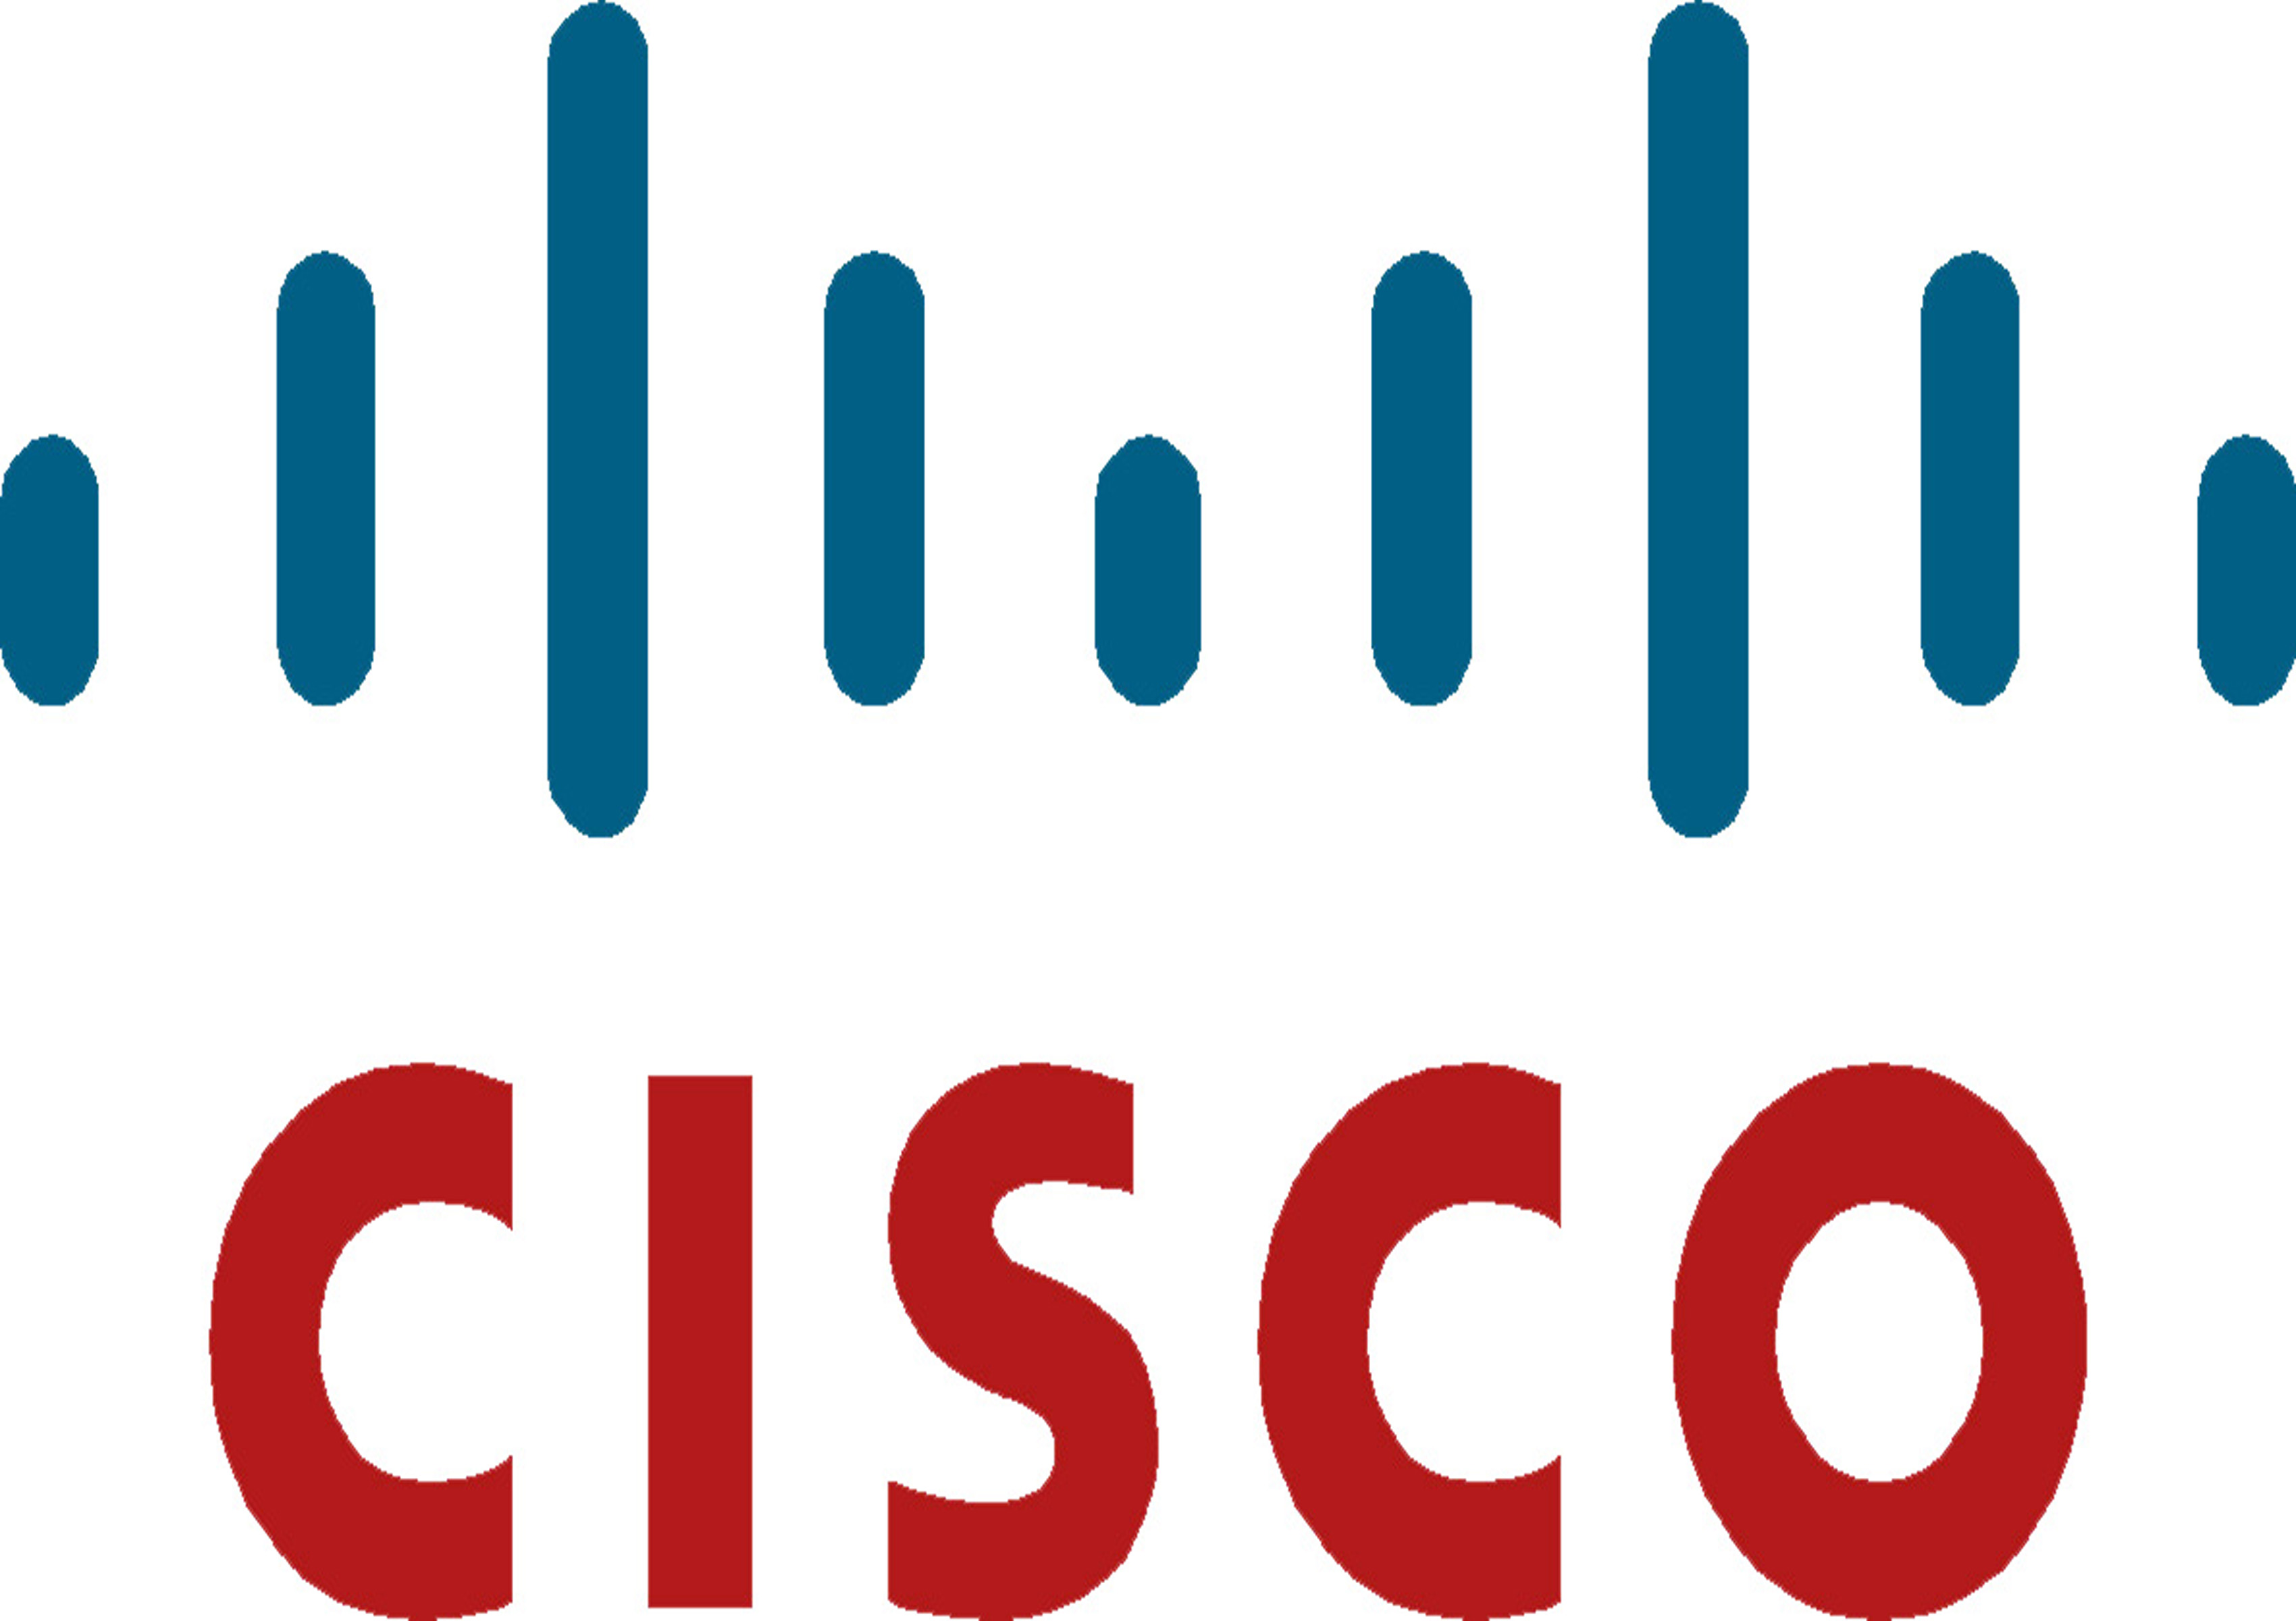 Cisco symbol